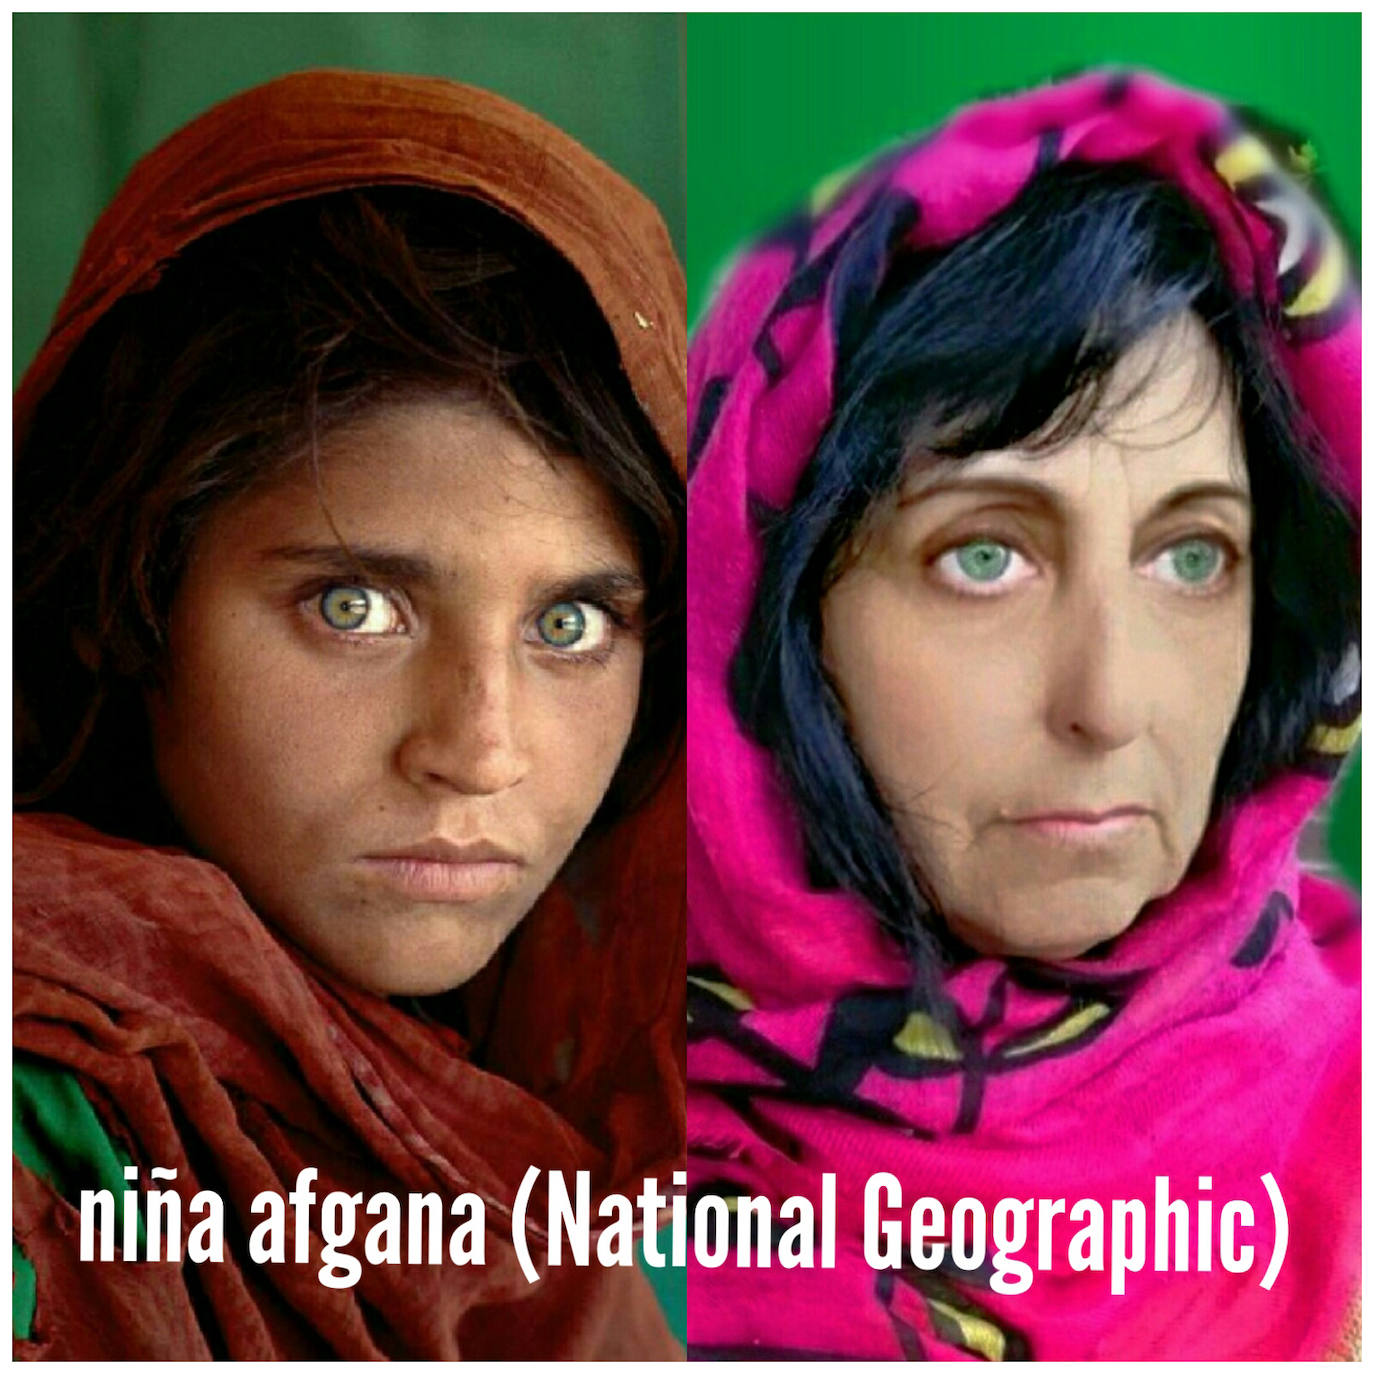 Título del cuadro/fotografía: ‘Niña afgana’. Autor/a: Steve McCurry. Pintado: 1984. Maestro/a imitador: Charo Ocerín, Maestra de Religión.